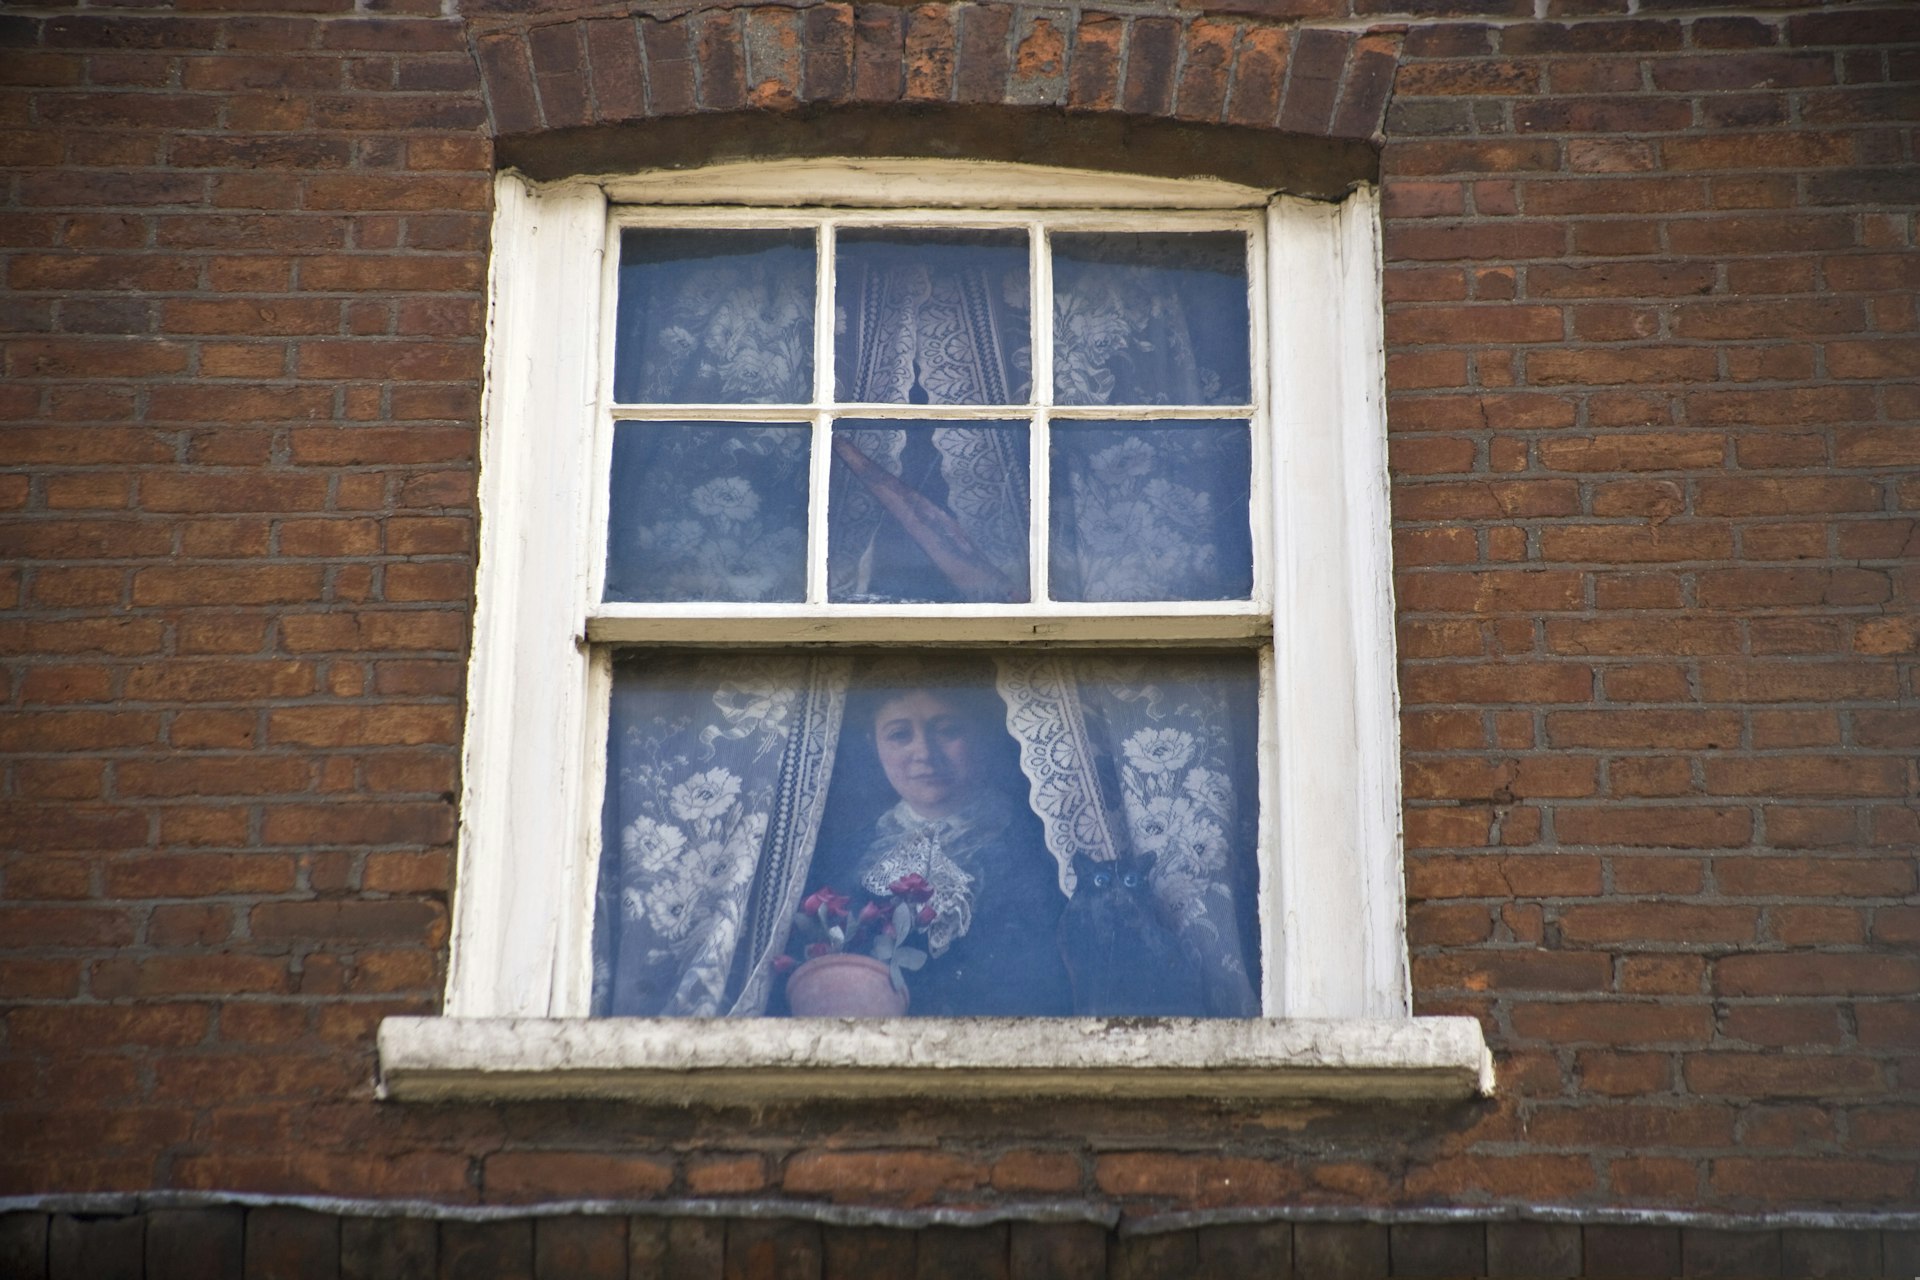 A woman is pictured in a trompe l'oeil window in London. 